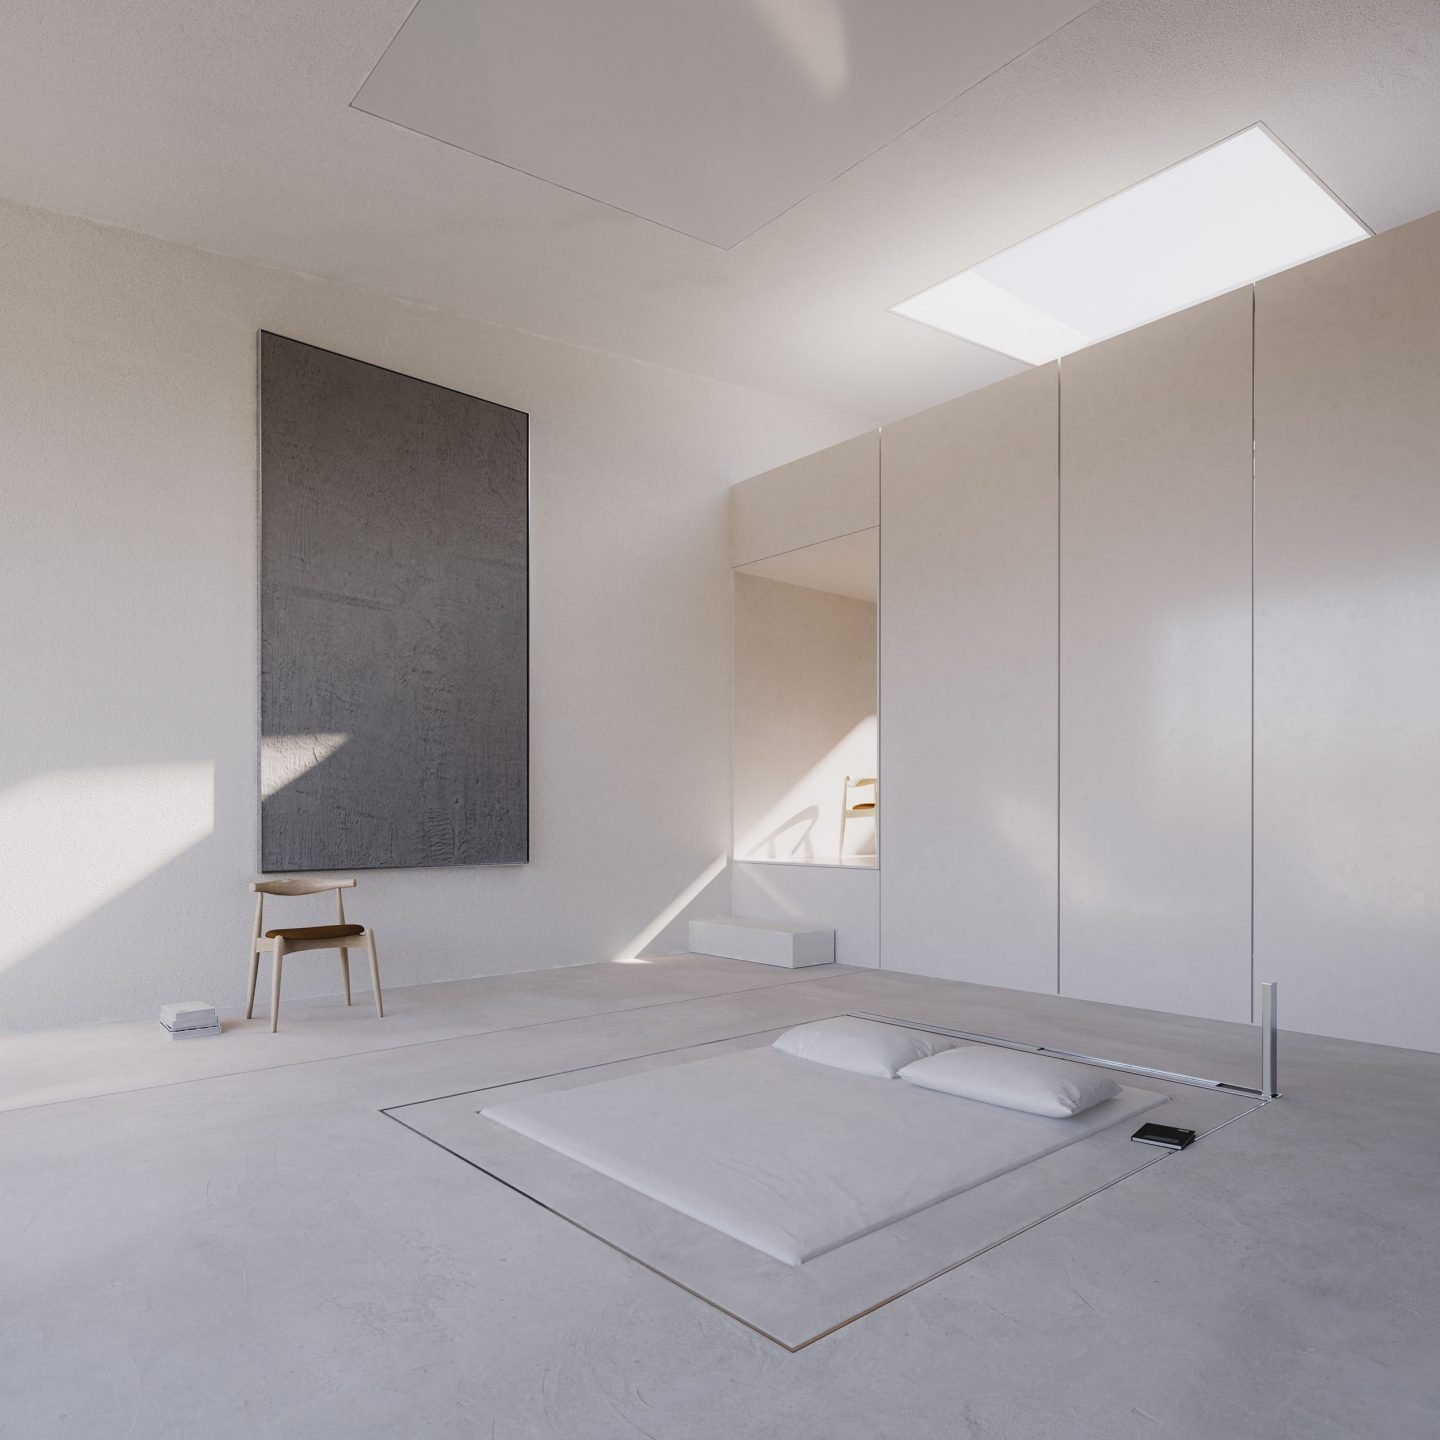 Casa de arquitectura moderna en grecia de color blanco dormitorio con cama enterrada